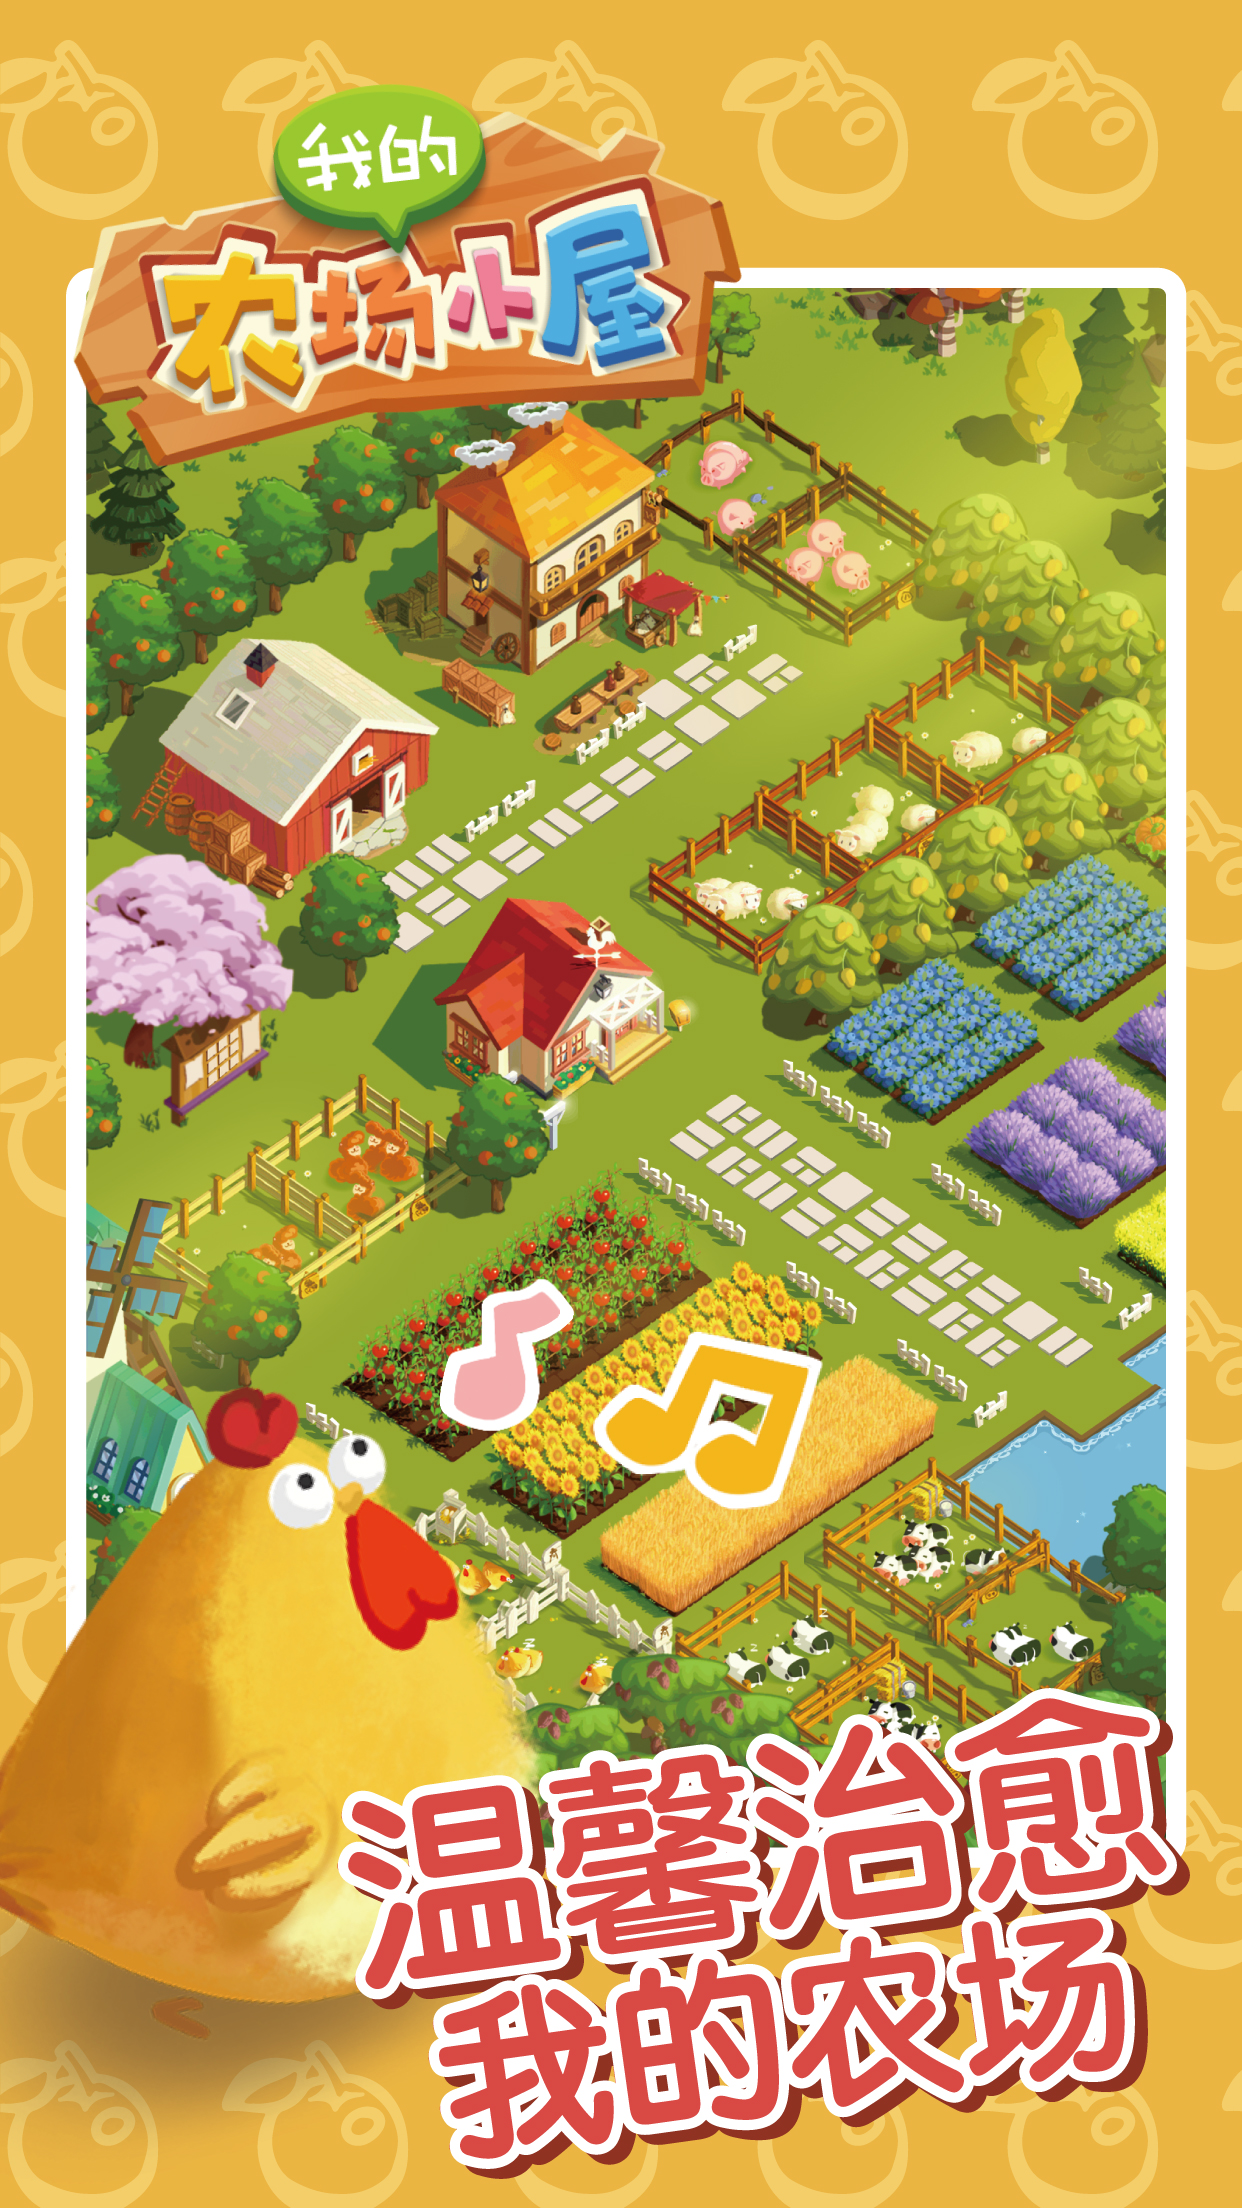 2020好玩的模拟经营农场游戏推荐 开启你的田园生活